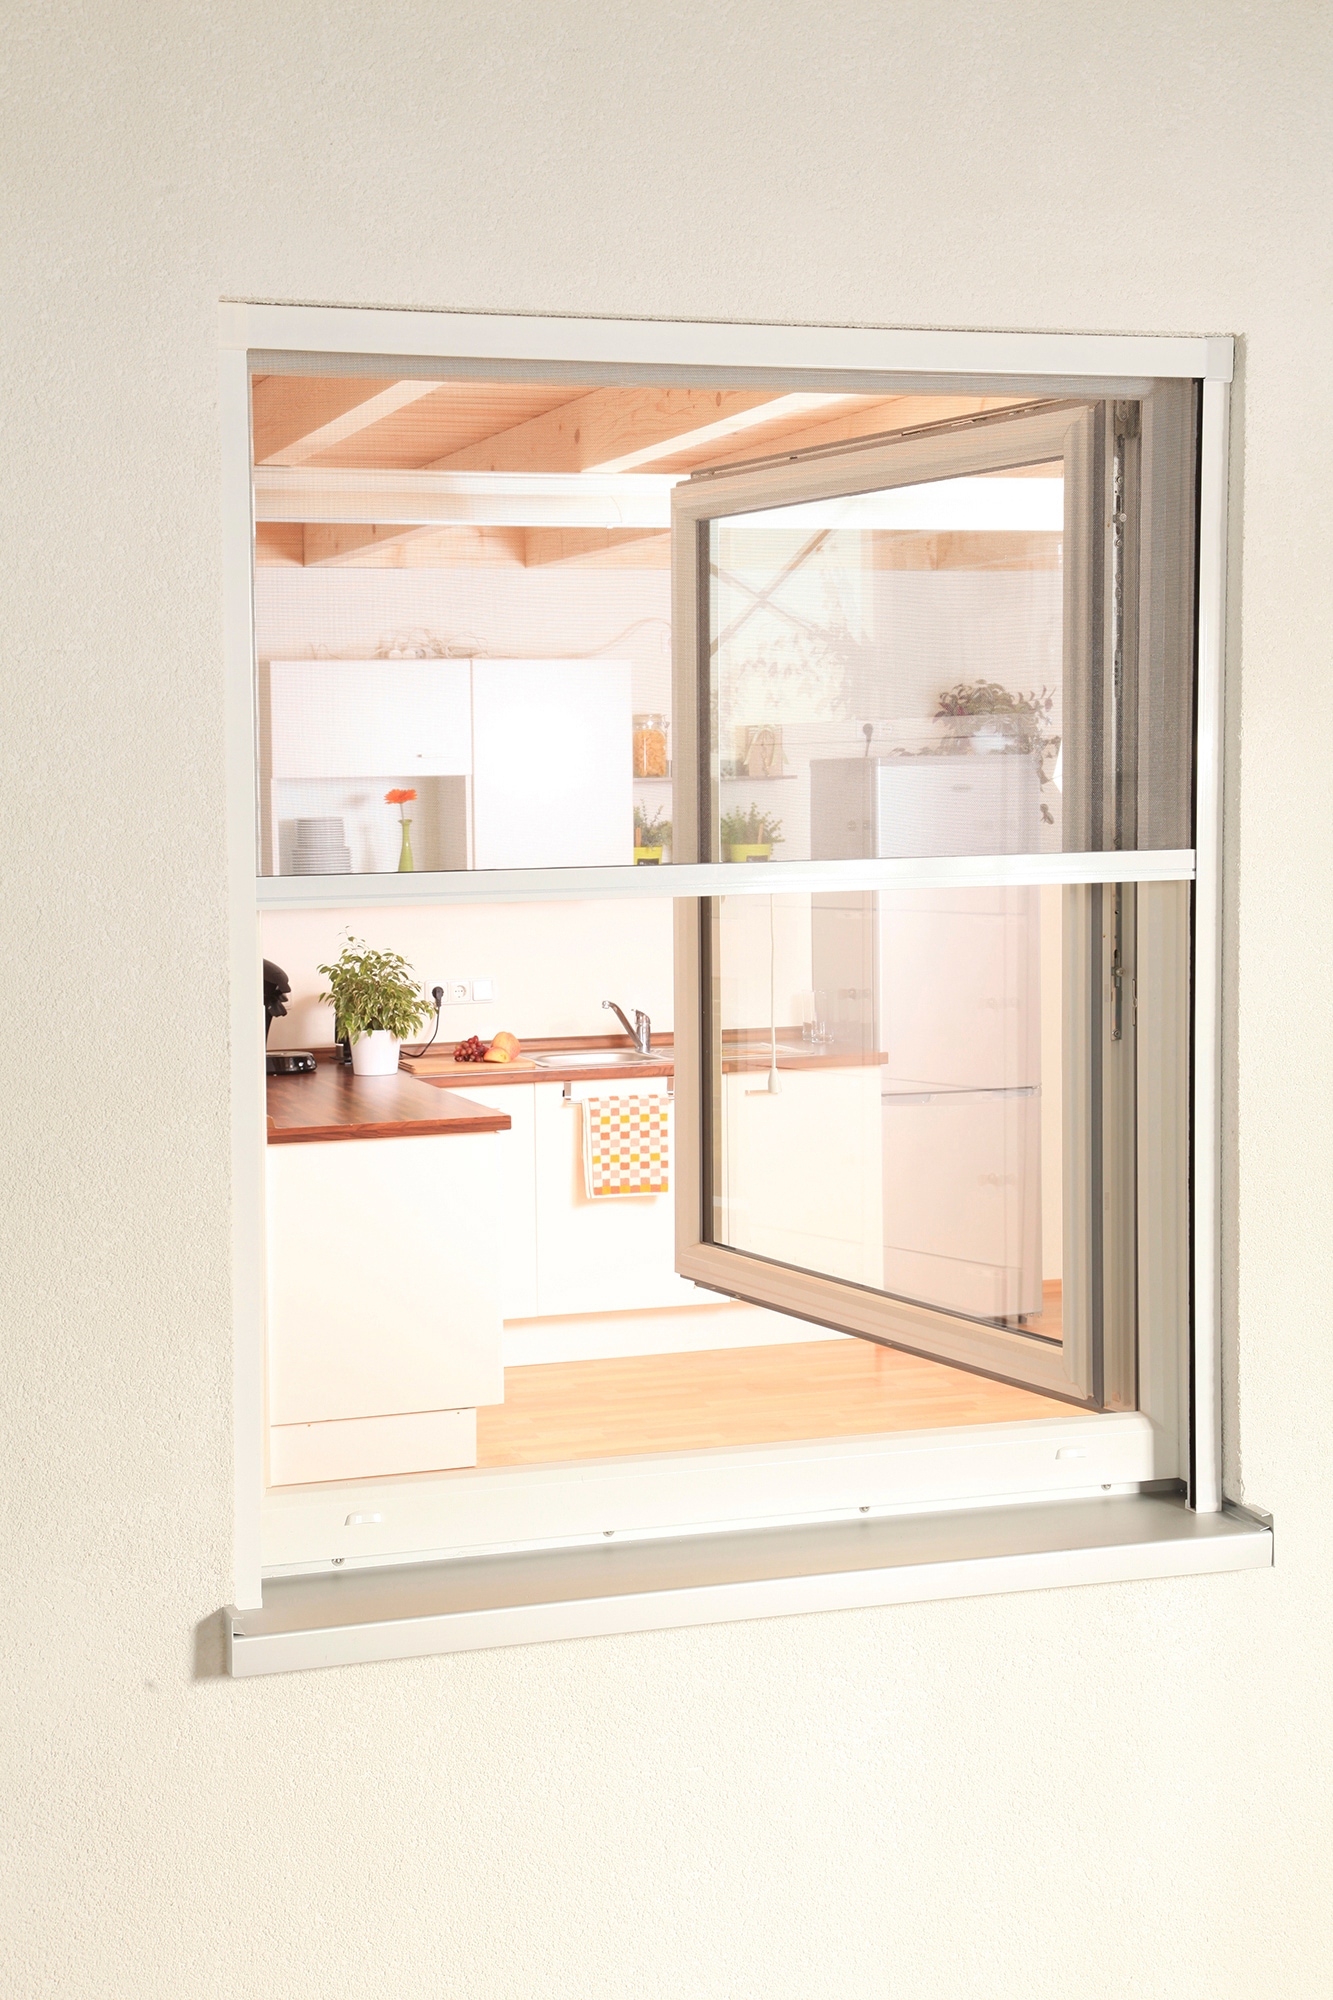 hecht international Insektenschutzrollo »SMART«, transparent, für Fenster, weiß/anthrazit, BxH: 160x160 cm